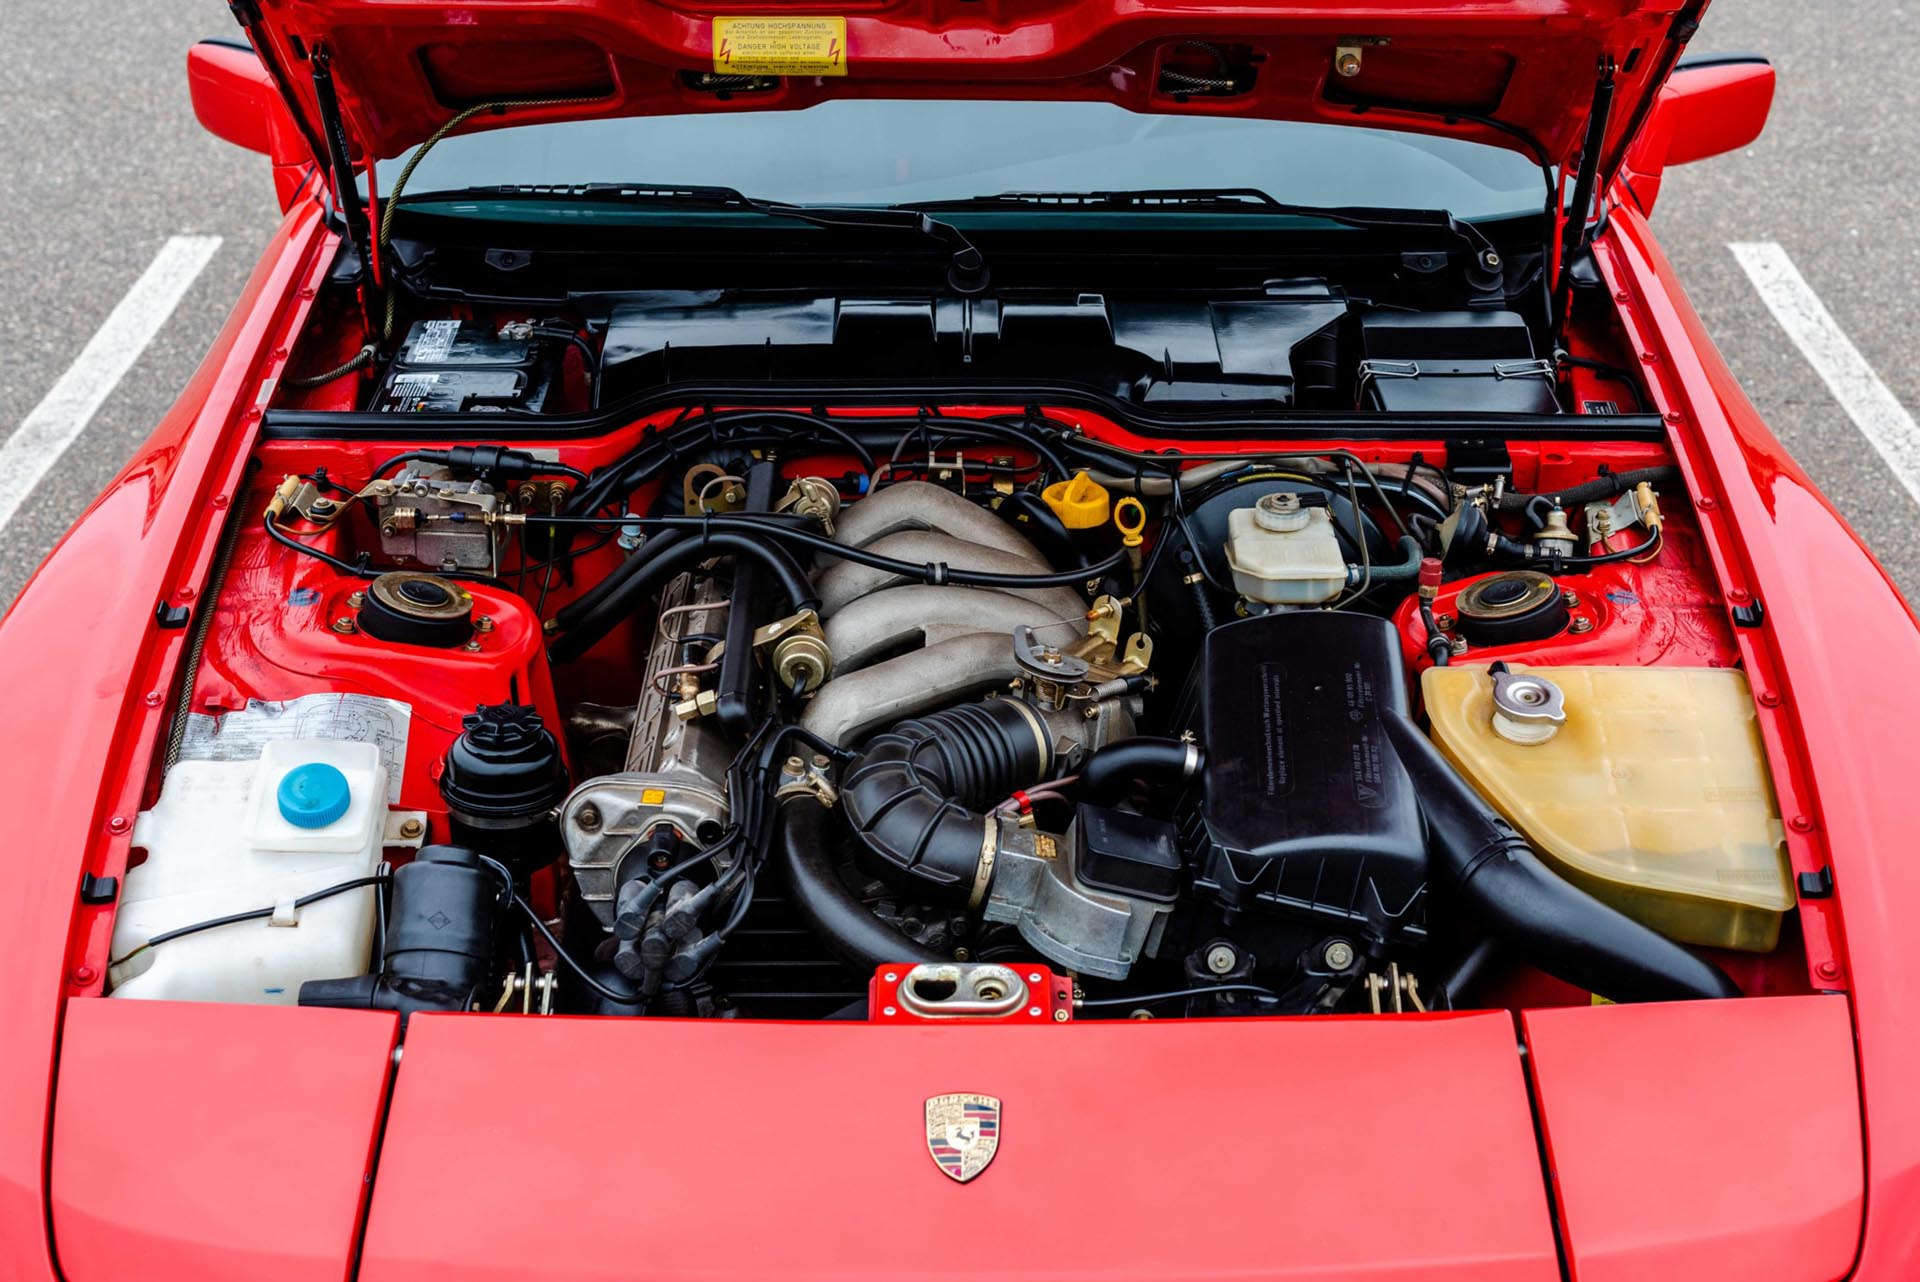 03_Porsche 944 engine